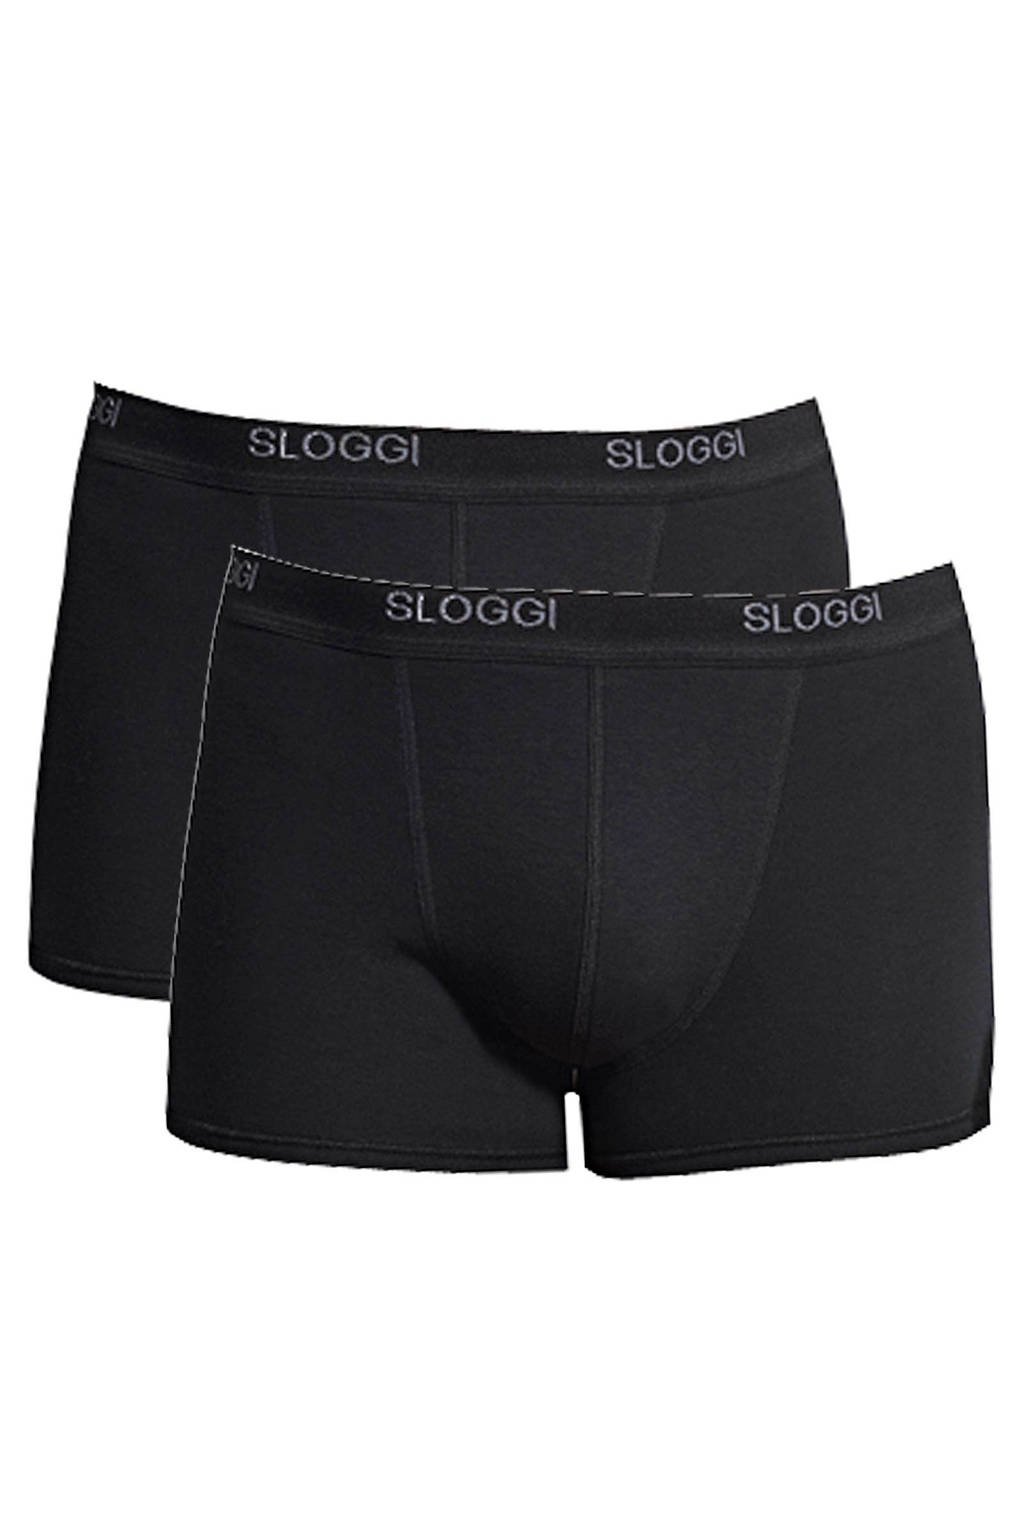 sloggi men Basic boxershort (set van 2) zwart